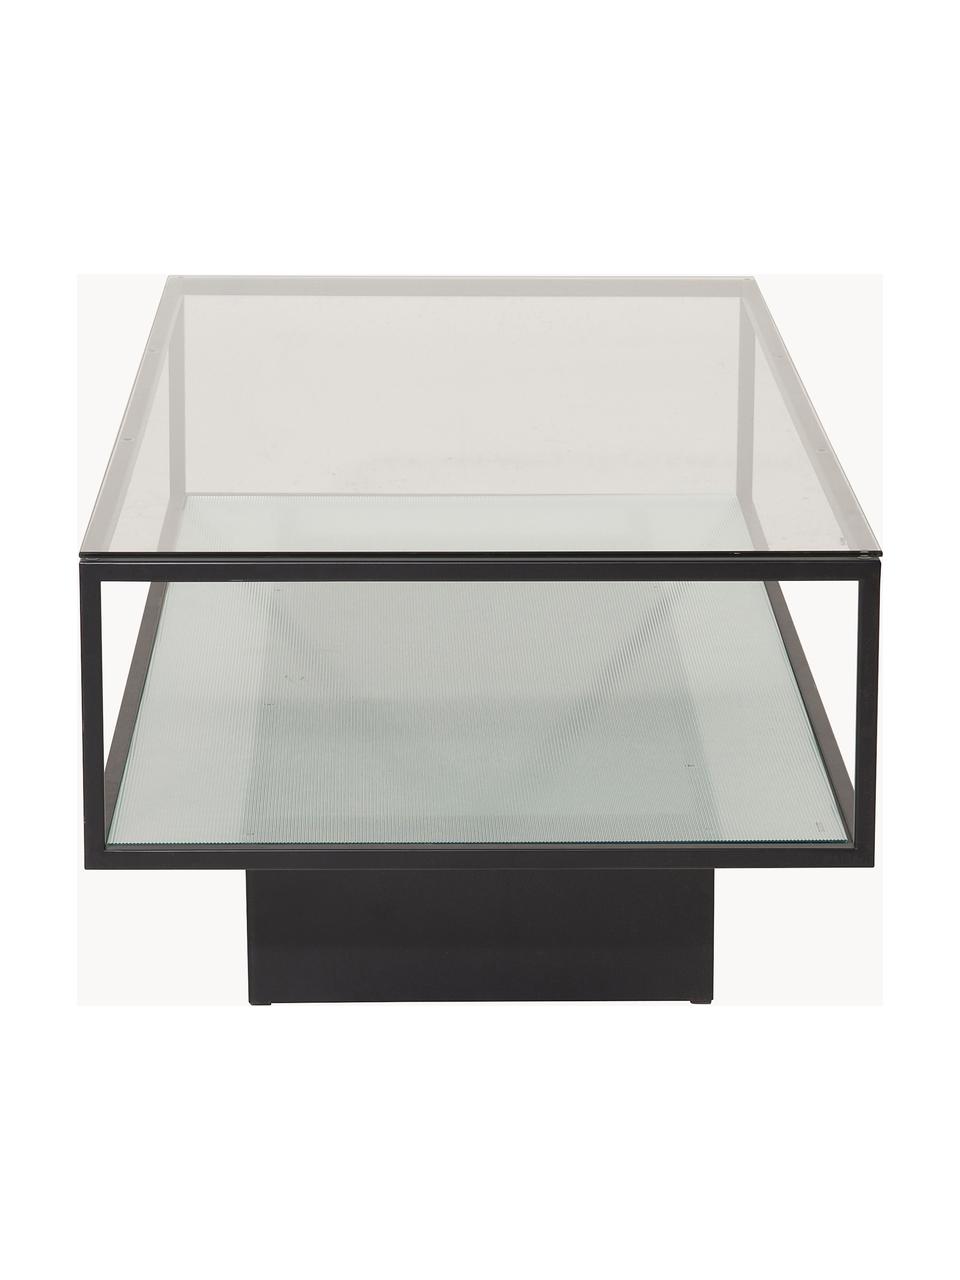 Table basse en métal avec plateau en verre Maglehem, Noir, transparent, larg. 130 x prof. 60 cm